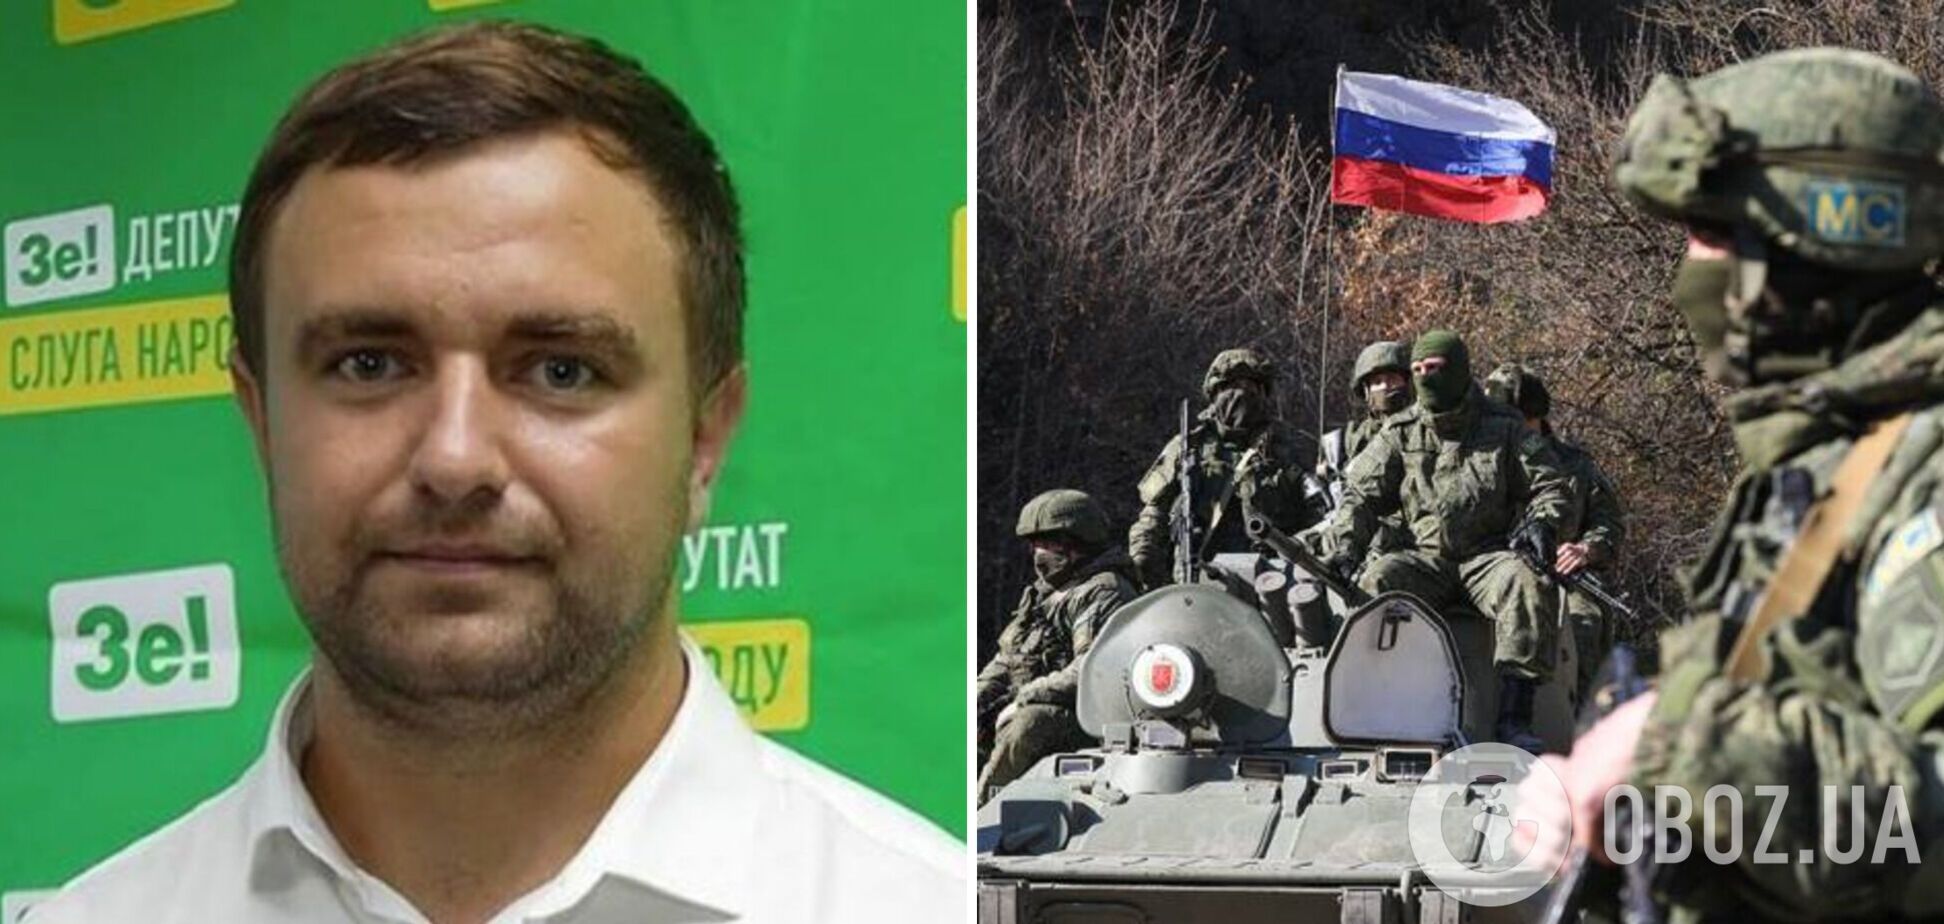 Из фракции 'Слуга народа' исключили Алексея Ковалева, которого подозревают в сотрудничестве с оккупантами